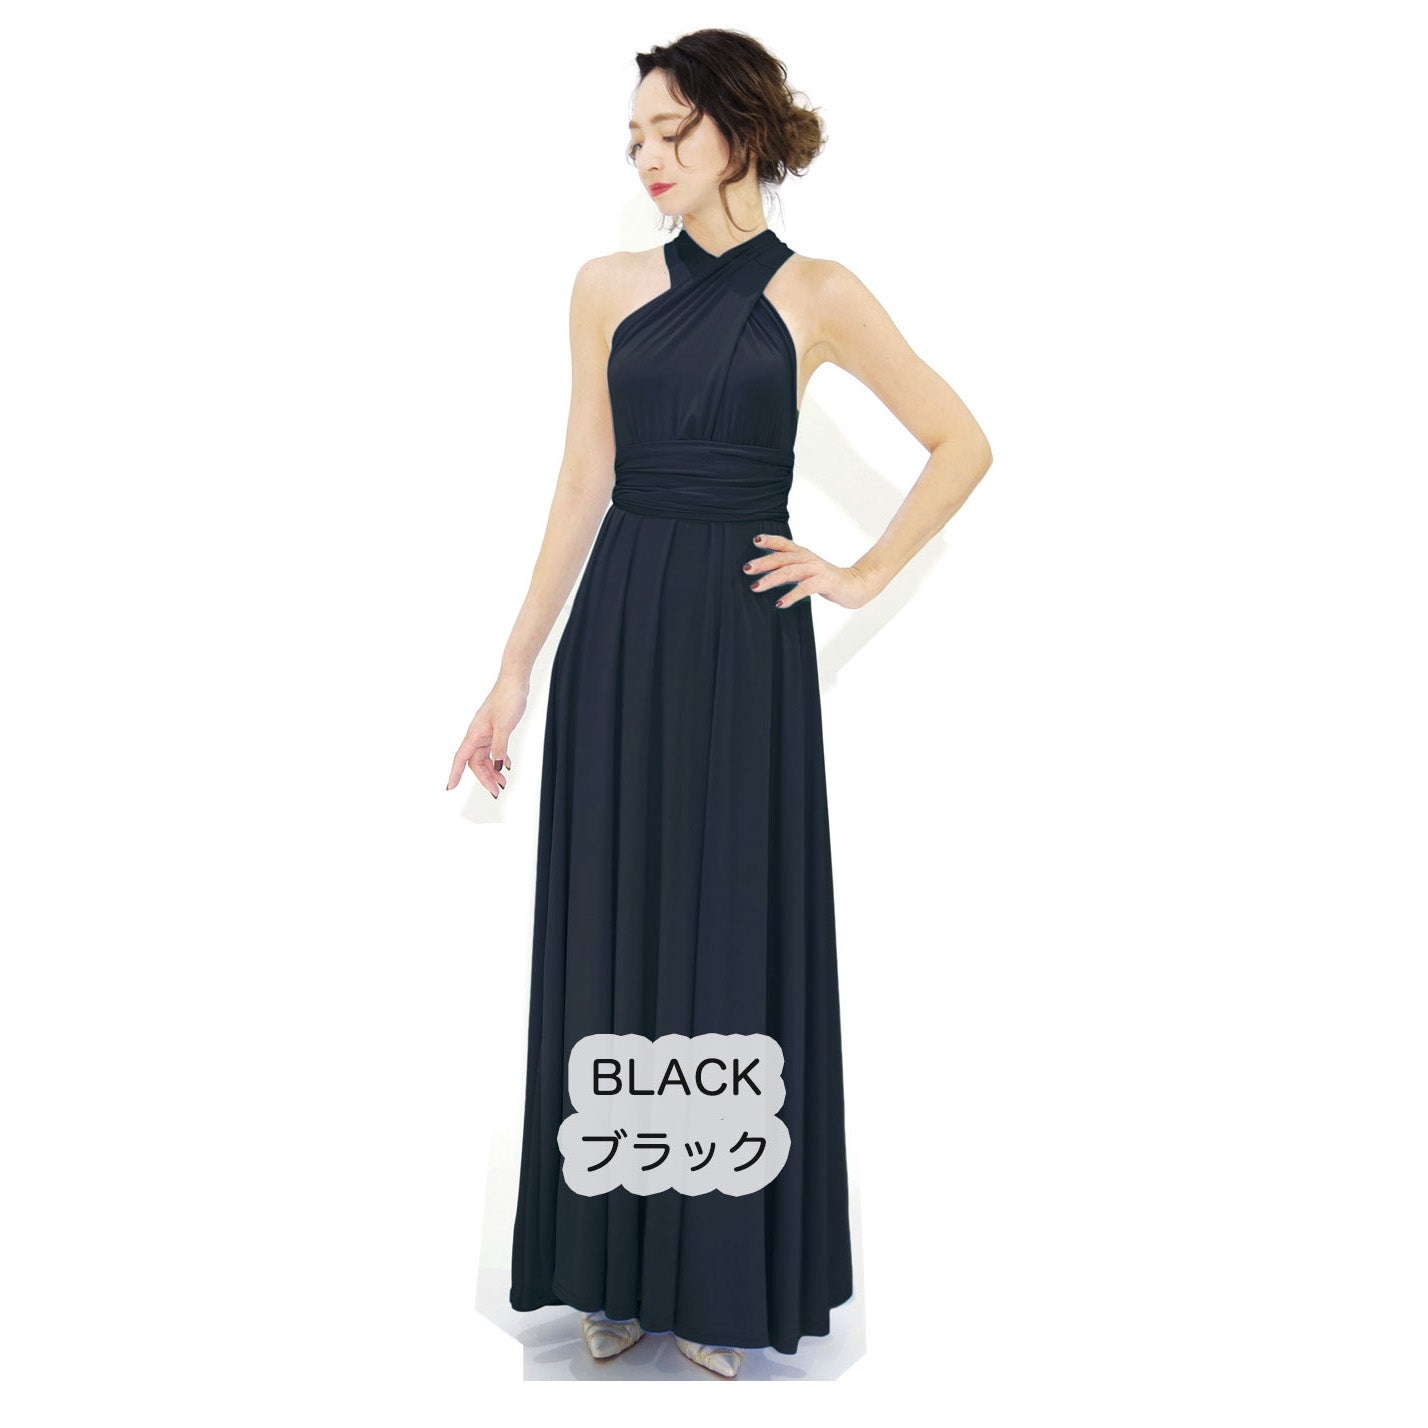  ツイスト＆ラップ インフィニティドレス フリーサイズ 大きいサイズ マタニティ ブライズメイド ドレス 衣装 フラダンス インフィニットドレス 黒 ブラック